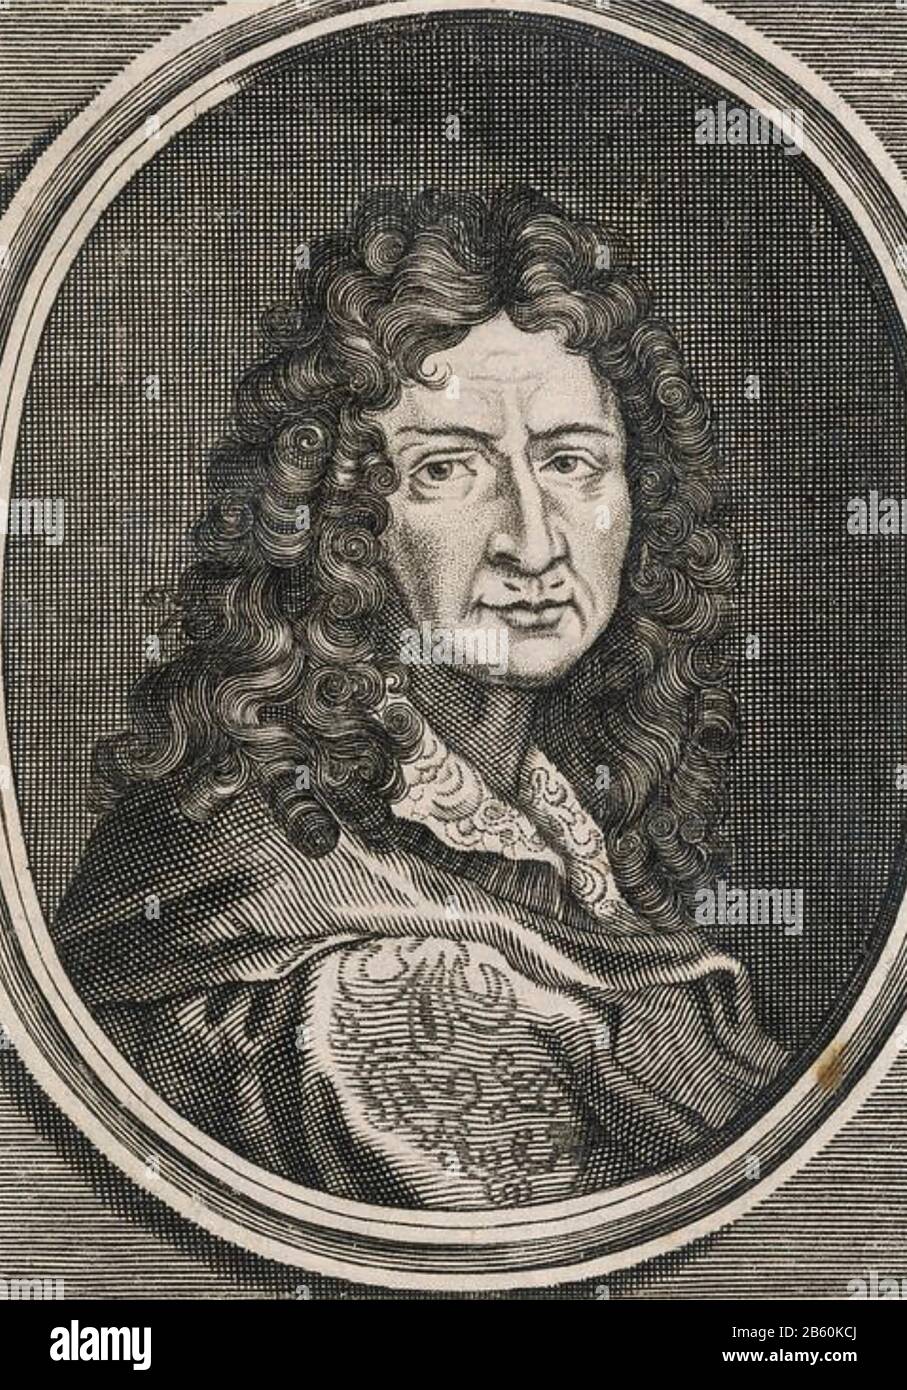 Jean-BAPTISTE POQUELIN - nom de scène Moliere (1622-1673) dramaturge, acteur et poète français. Banque D'Images